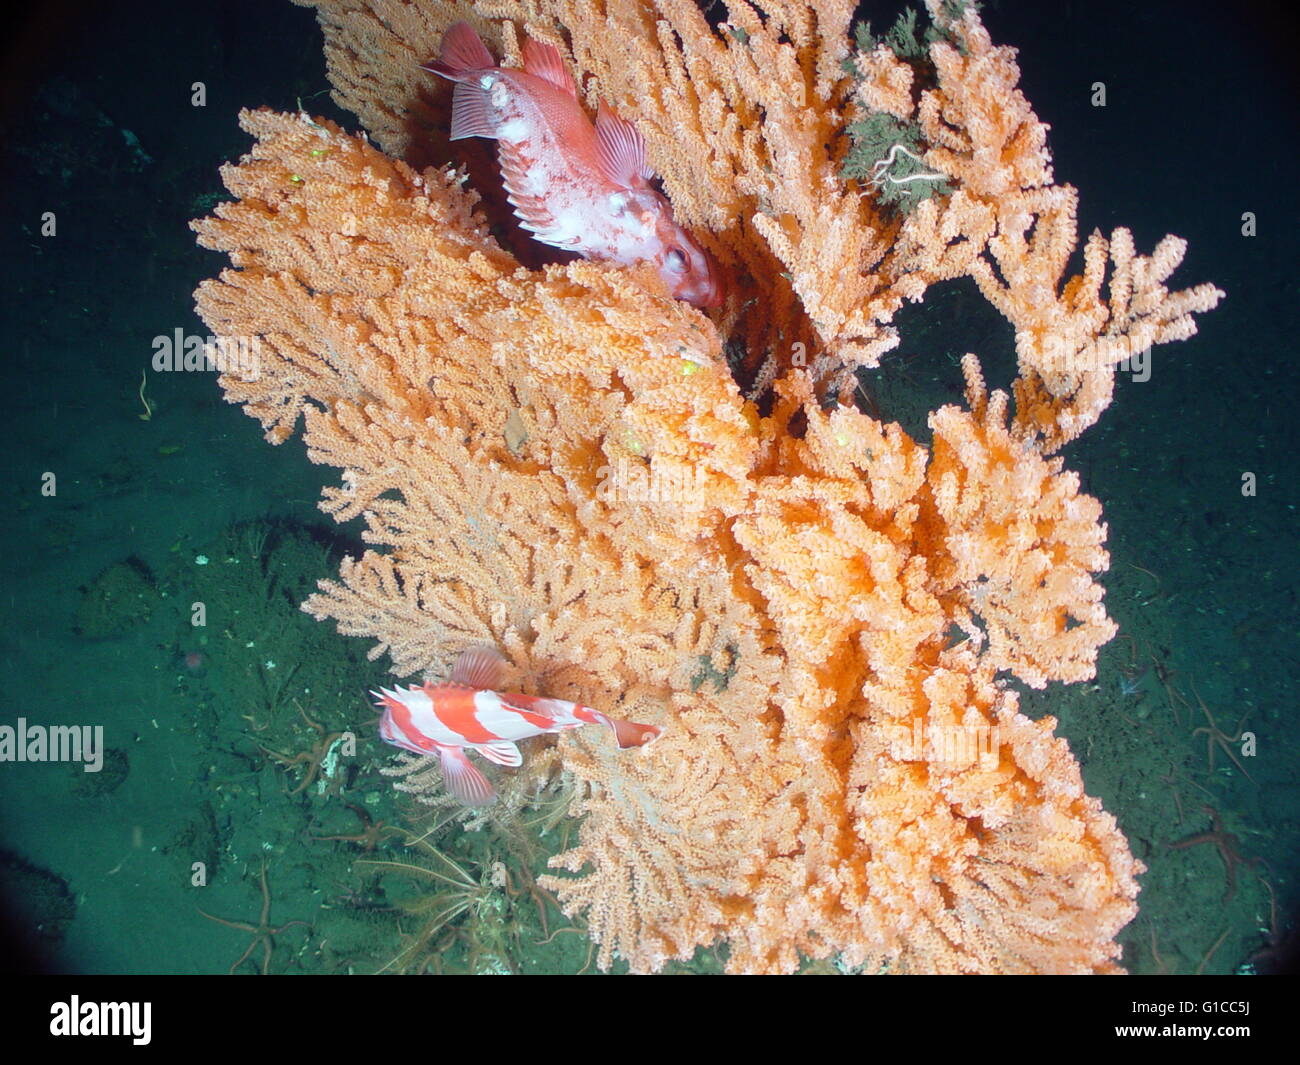 Primnoa Pacifica bietet Lebensraum für Drachenköpfe. Stockfoto